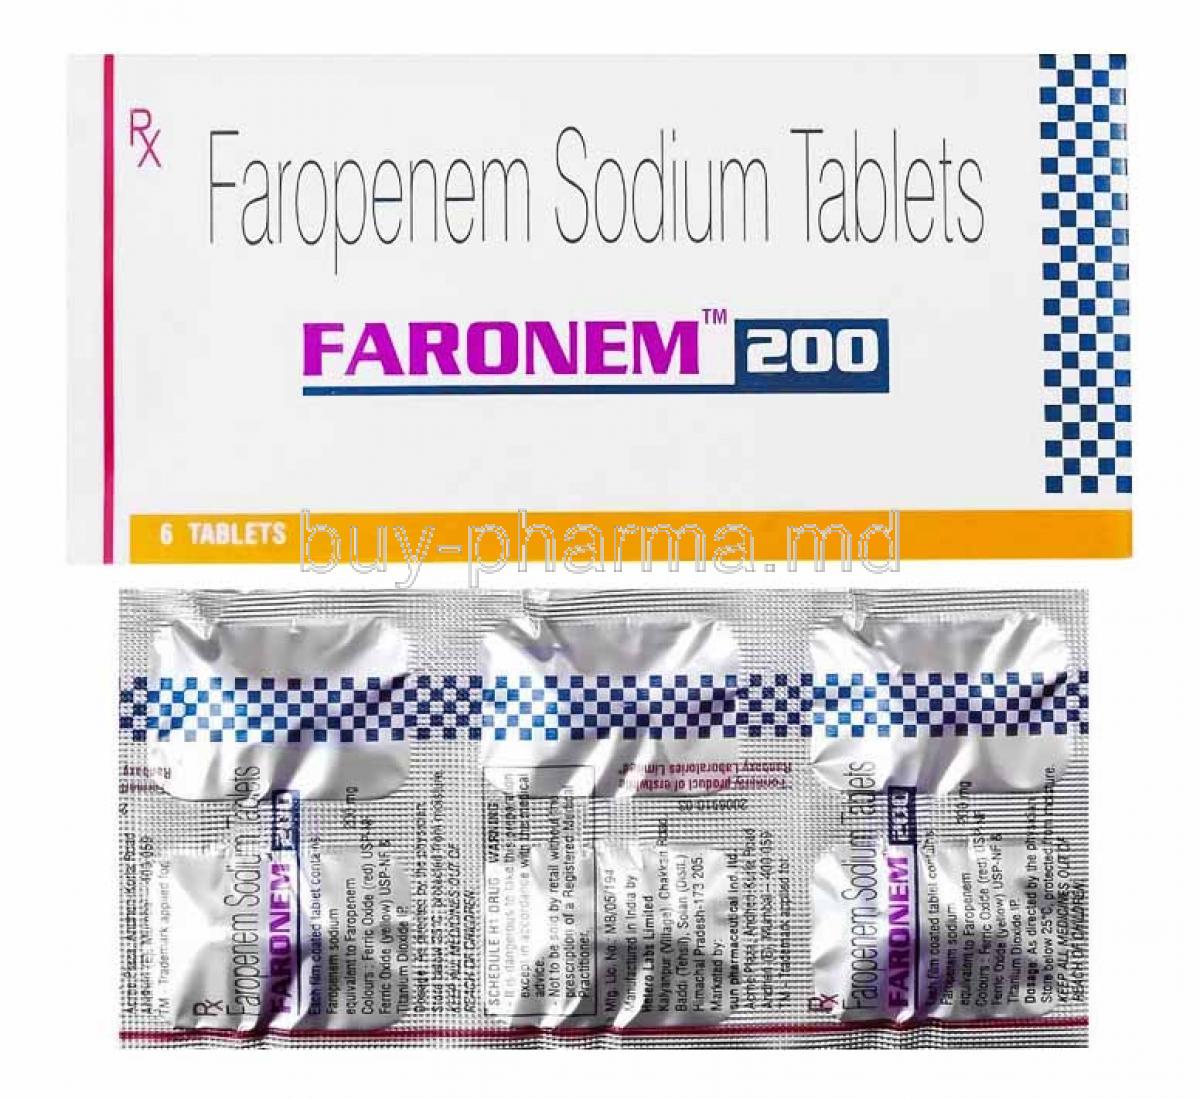 Faronem, Faropenem box and tablets